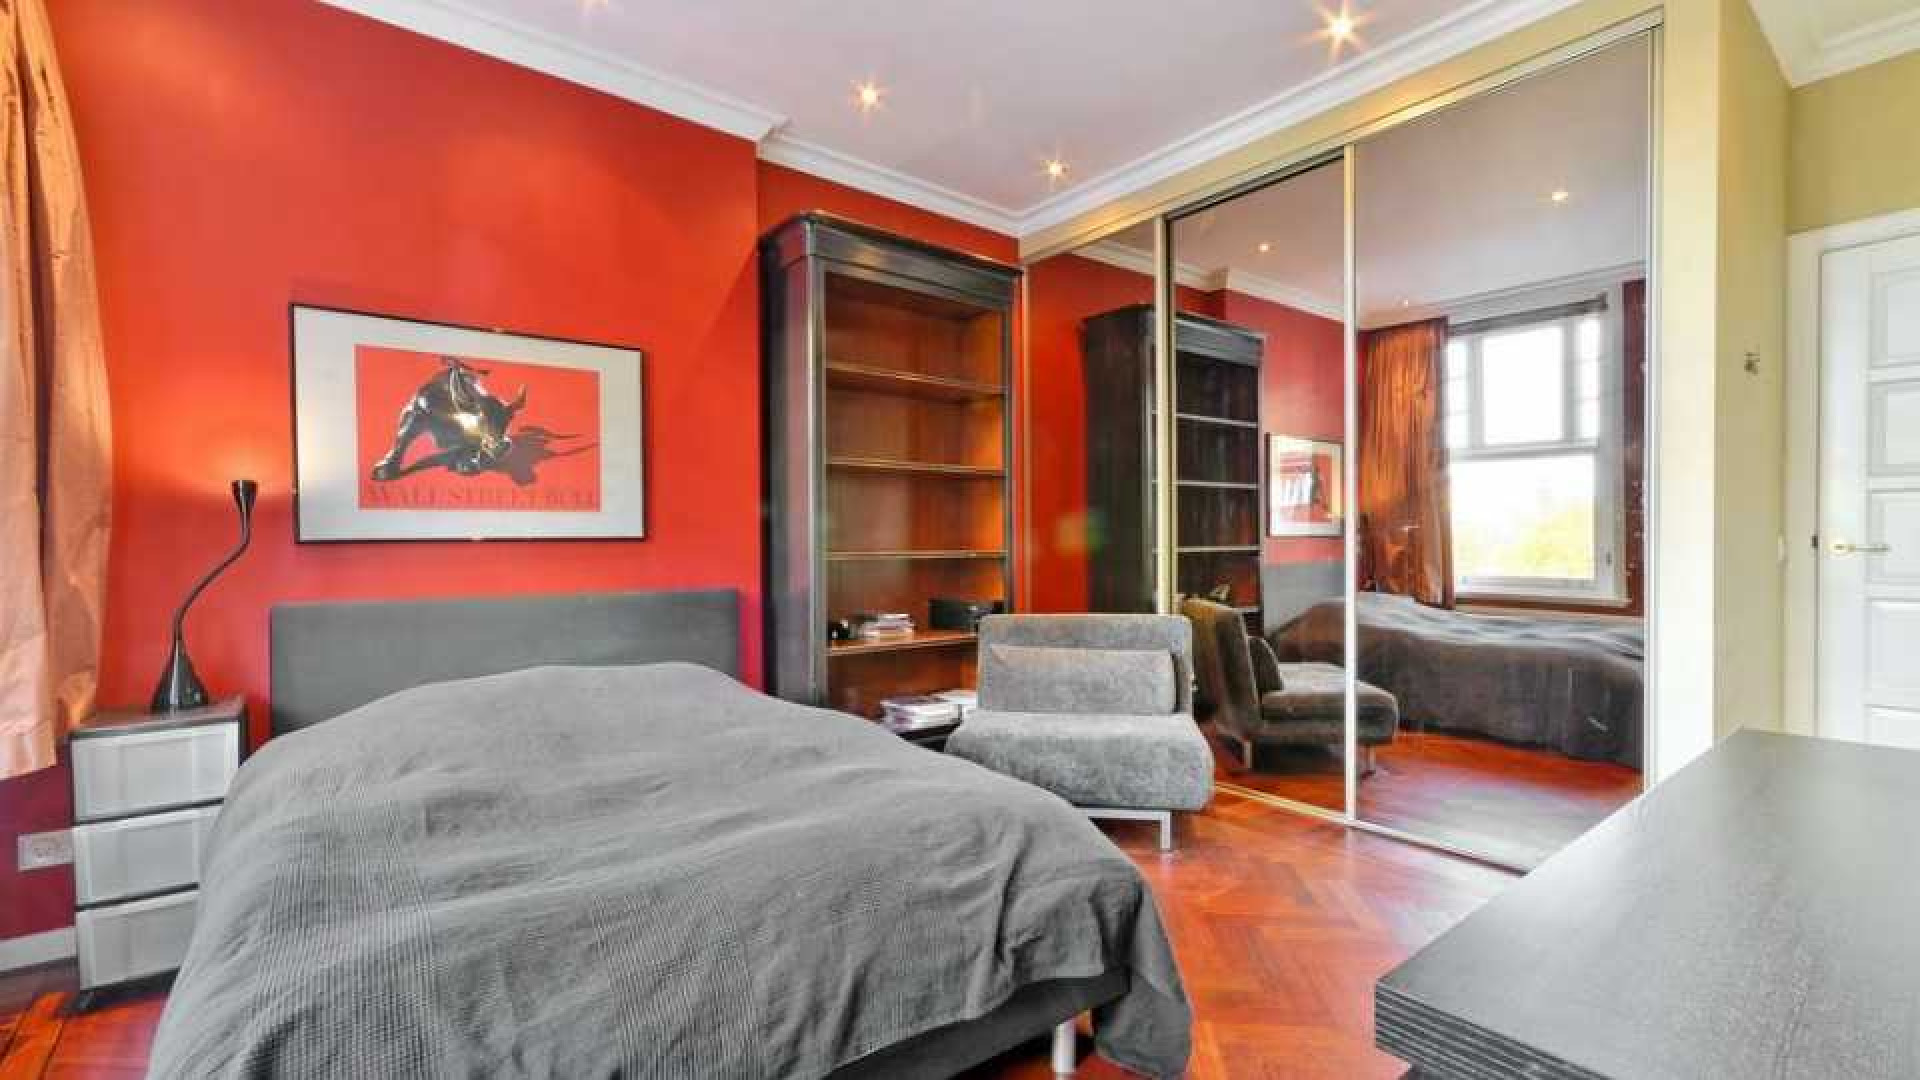 Chazia Mourali koopt met eigen geld luxe appartement in Amsterdam Zuid. Zie foto's 12